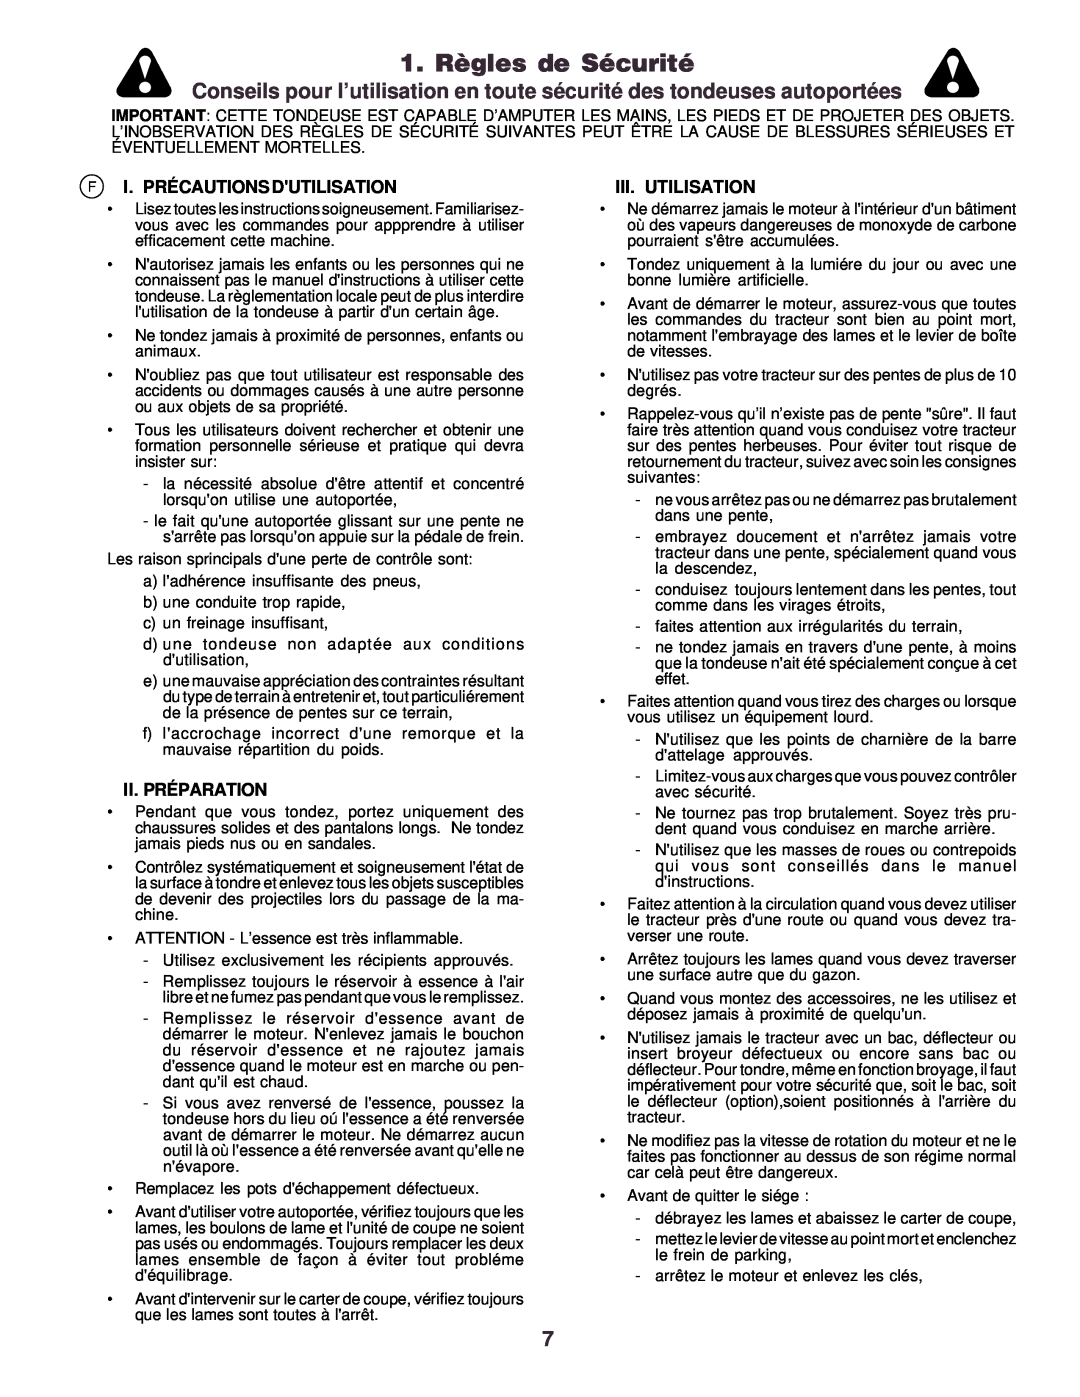 Husqvarna CTH130 instruction manual 1. Règles de Sécurité, F I. Précautions Dutilisation, Ii. Préparation, Iii. Utilisation 